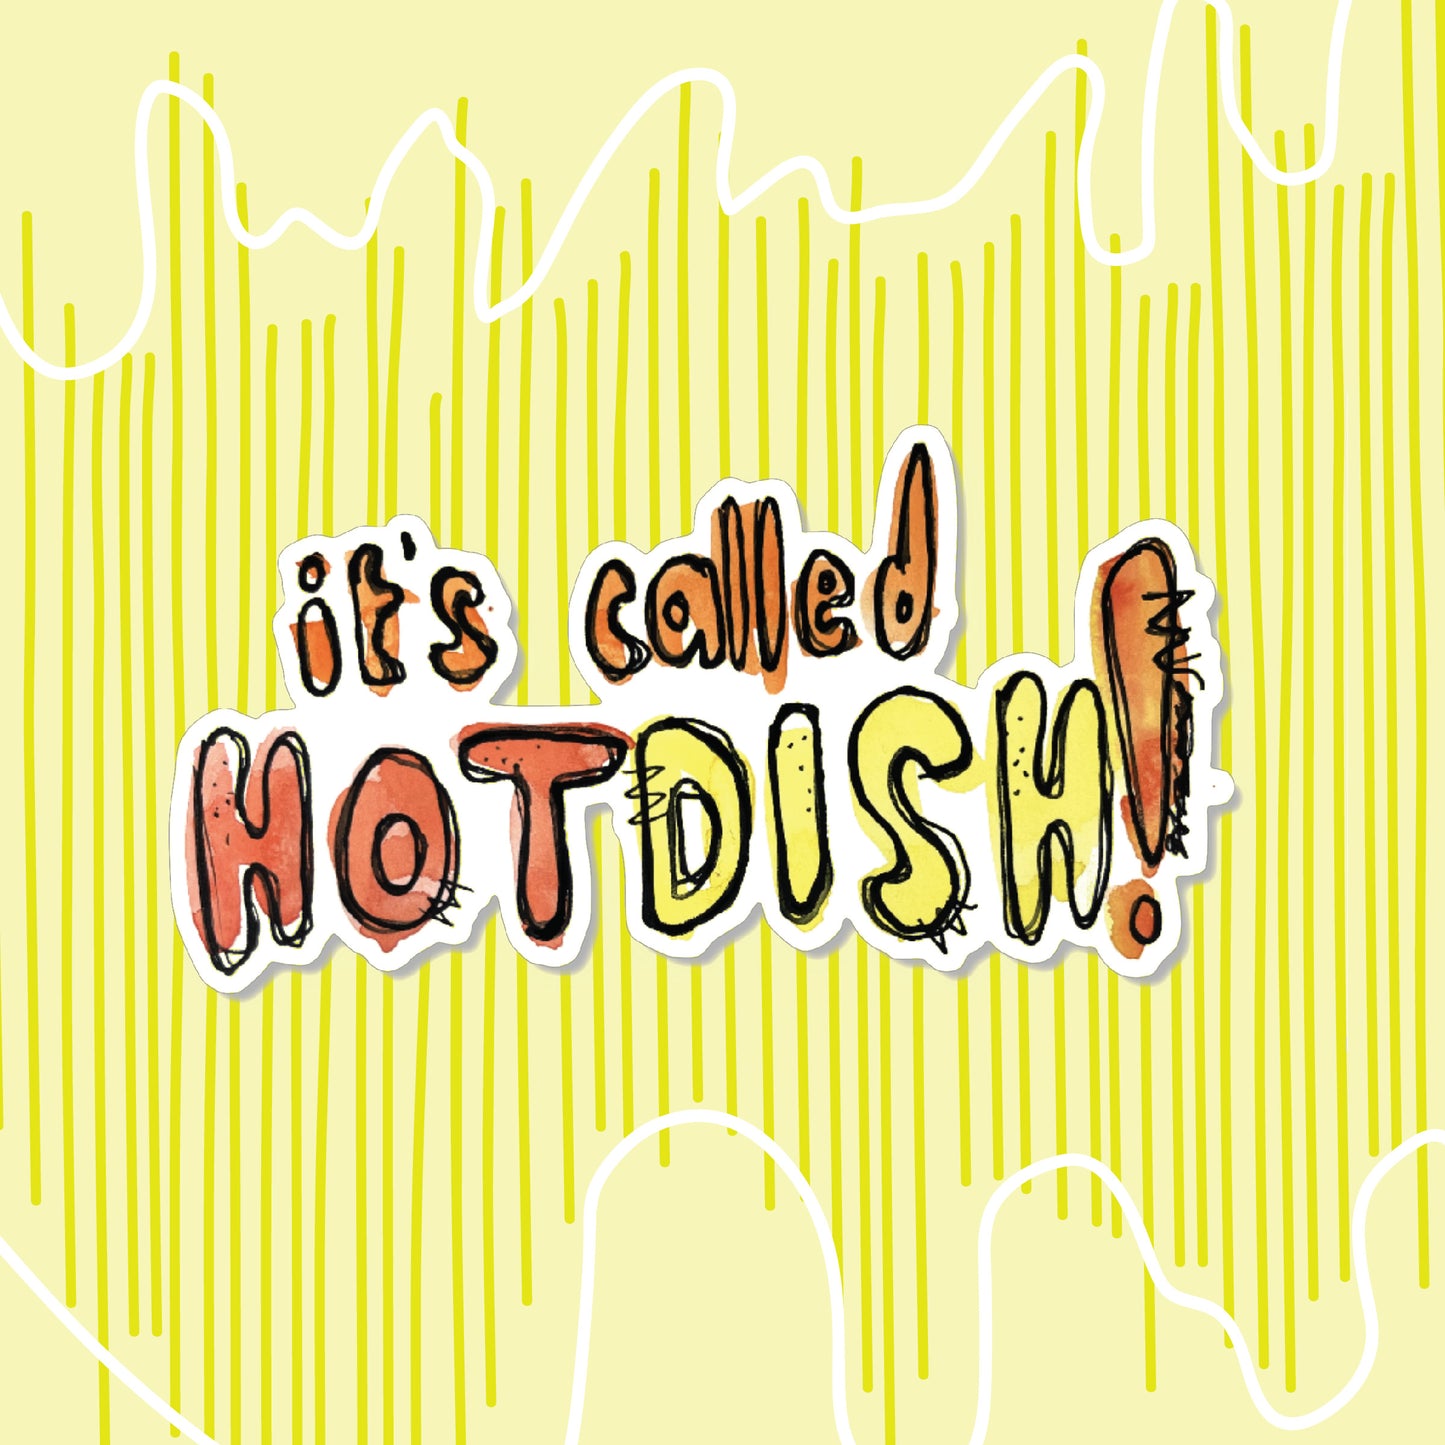 "It's Hotdish" Sticker